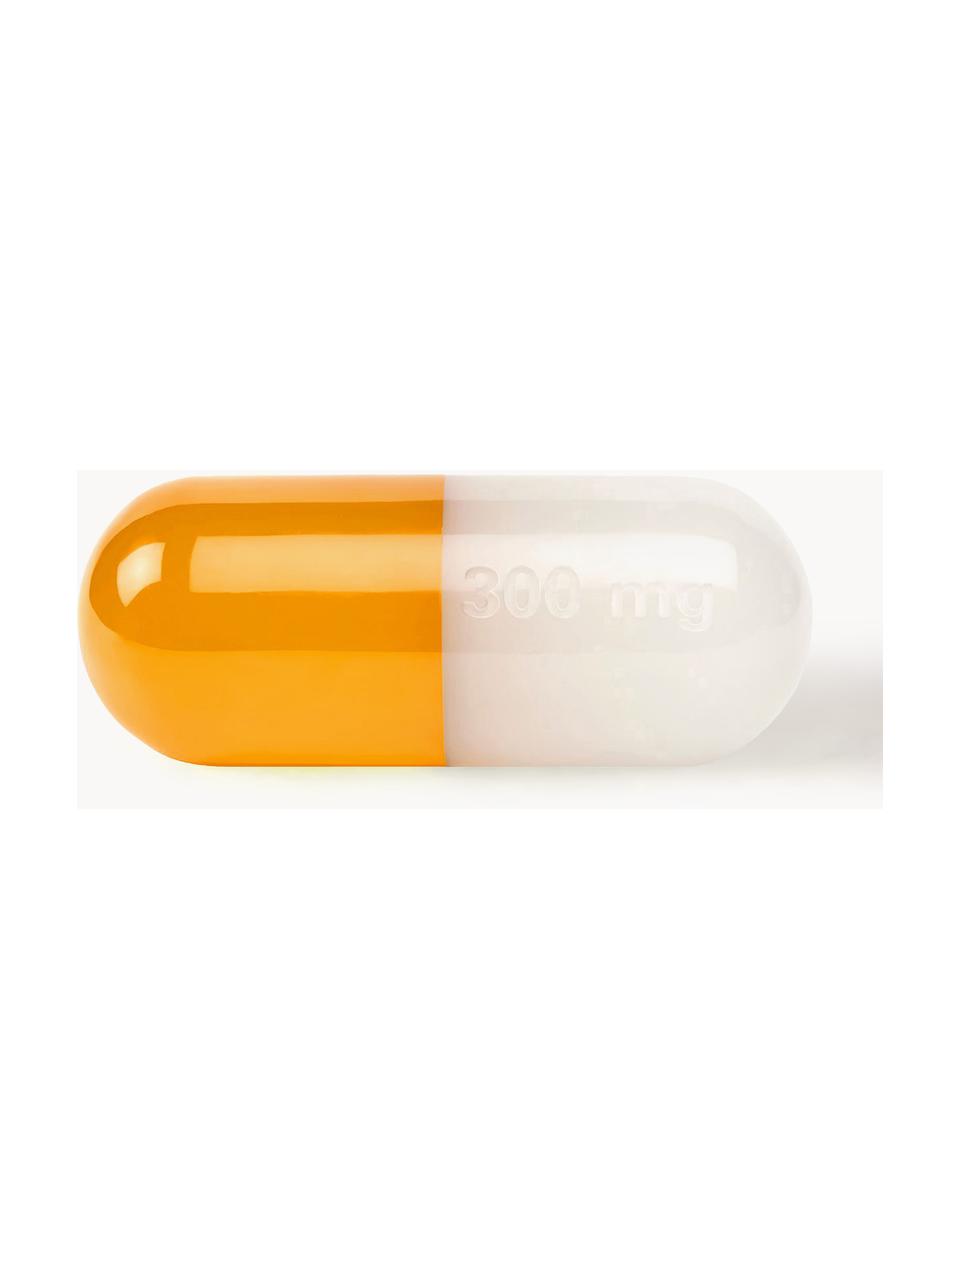 Deko-Objekt Pill, Polyacryl, poliert, Weiß, Orange, B 24 x H 9 cm